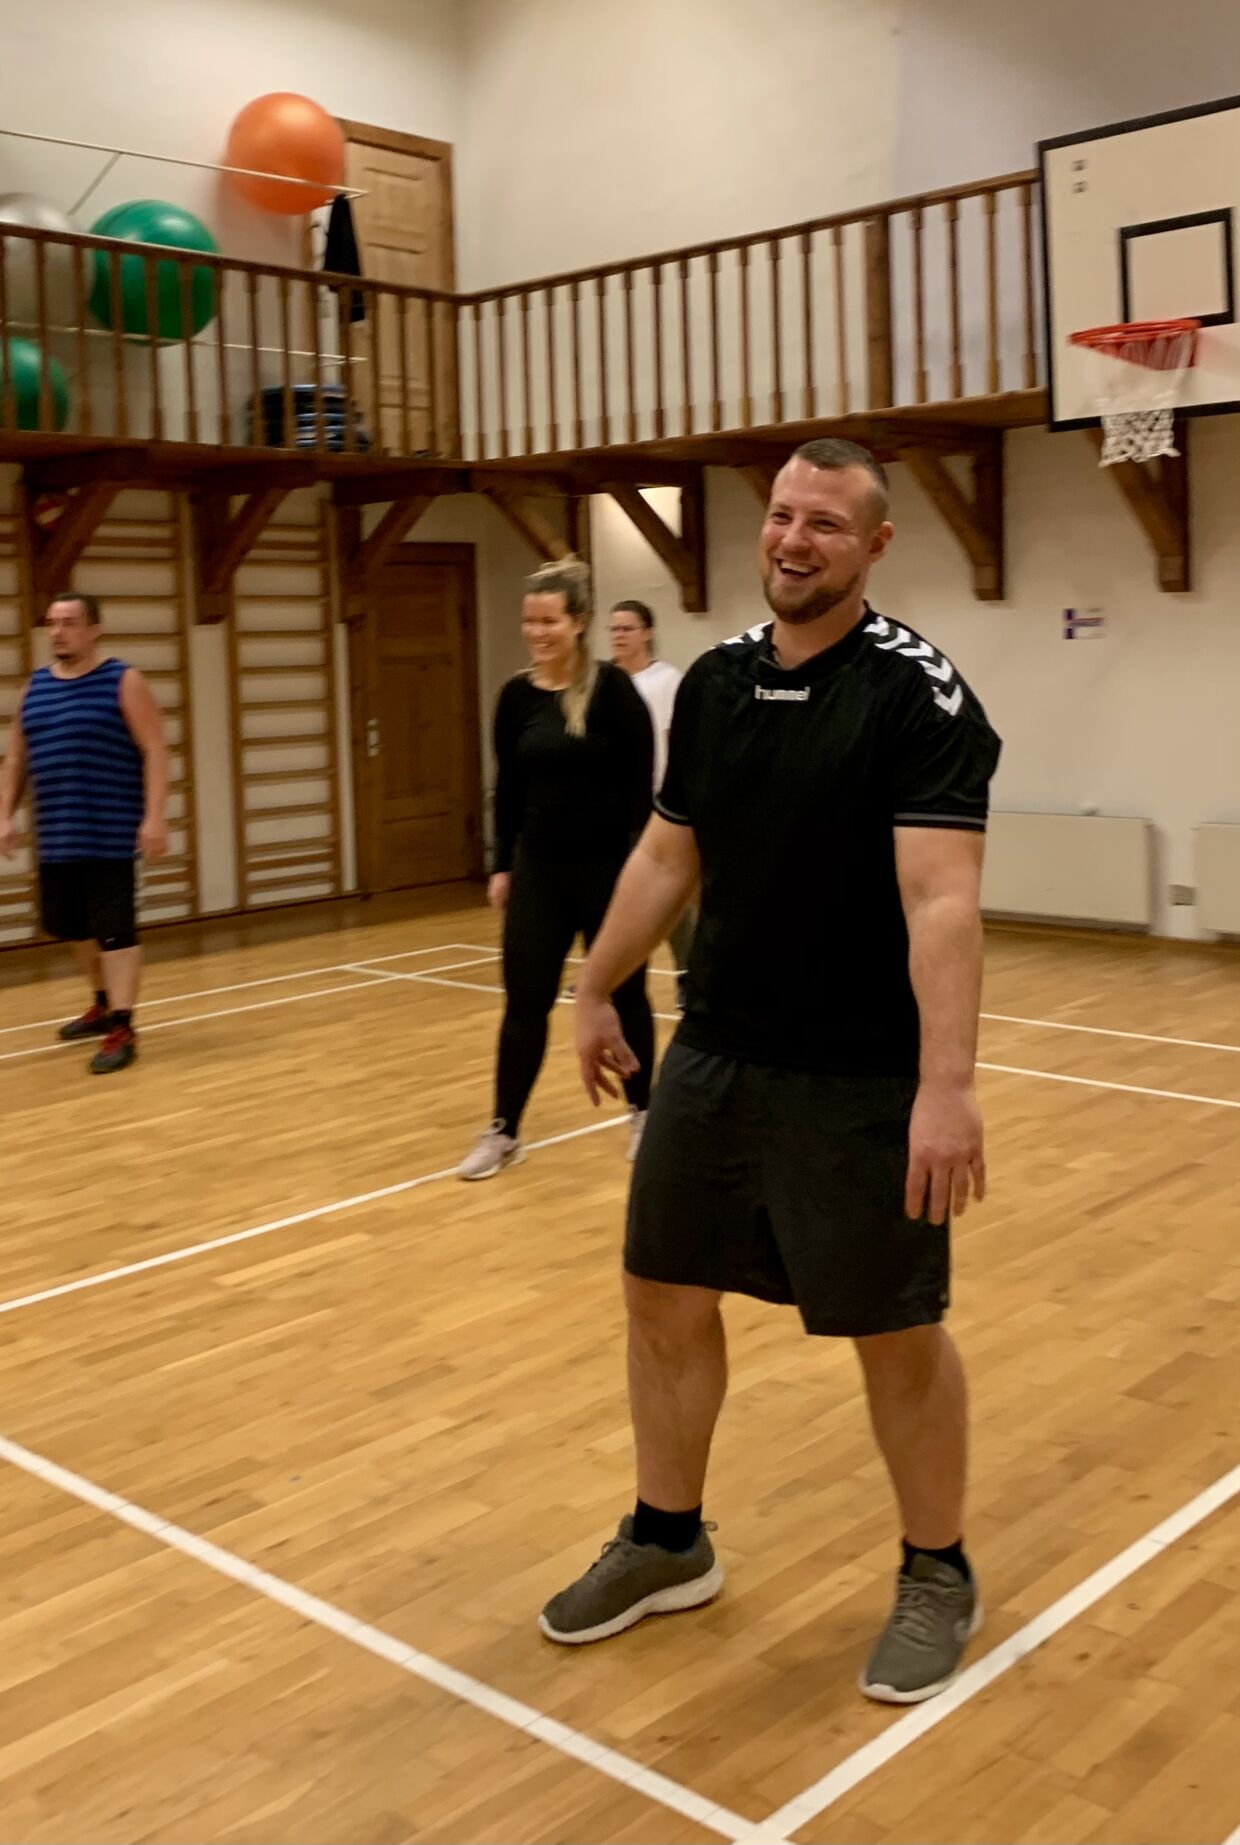 Volleyball er blevet nationalsporten på Ubberup Højskole, og Peter Paulsen får da også en masse grin og fællesskab ud af timerne i hallen.